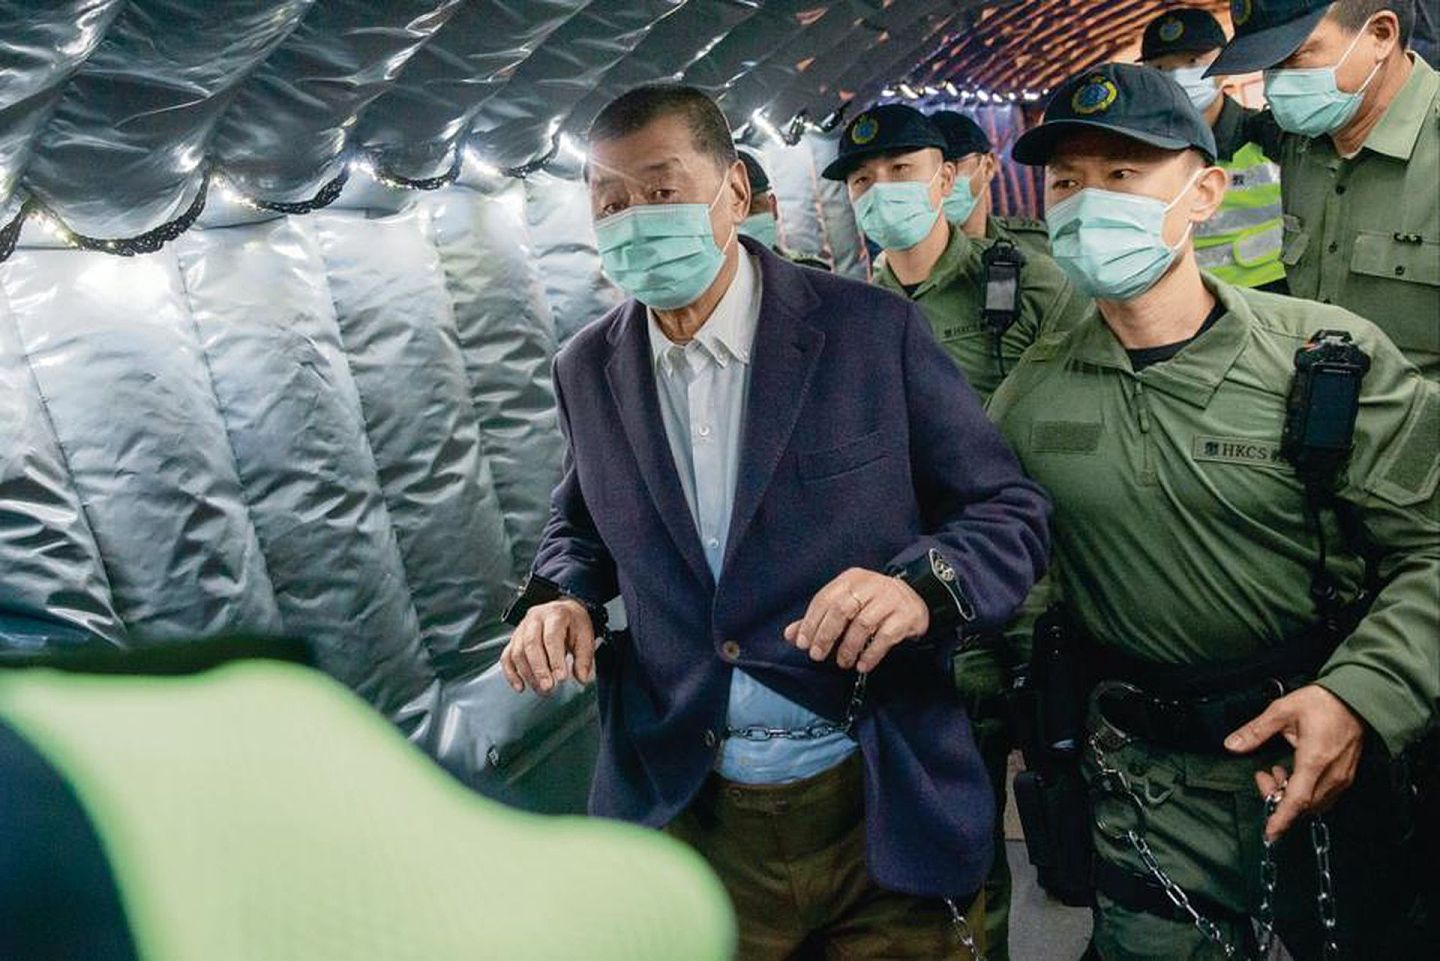 黎智英被捕及被控刑都是基于香港现有法律规范与司法体系的执行机制之下，但其不少的拥护者仍然将此归咎于北京的“打压”。（香港01）